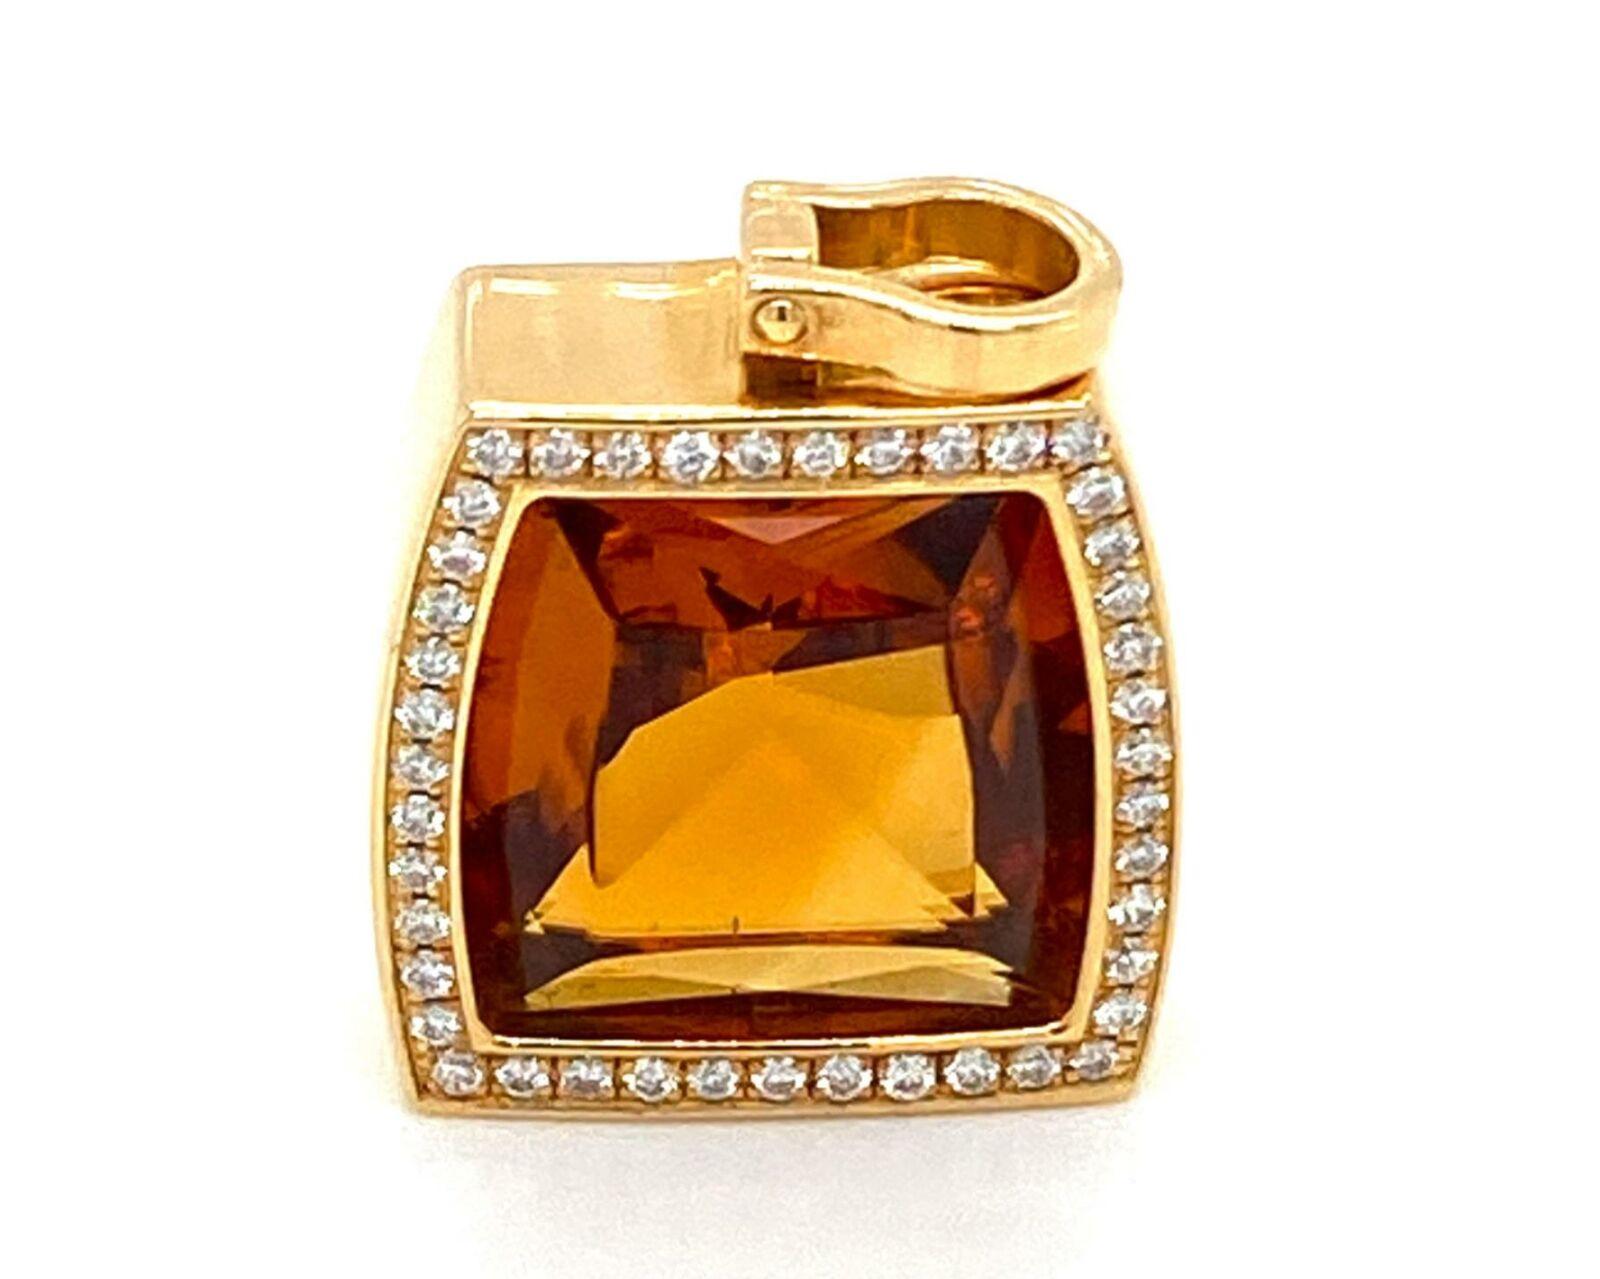 Elite et authentique de Cartier de la collection LA DONA. Ce magnifique pendentif est réalisé en or jaune 18 carats avec une finition finement polie. Il est orné d'une citrine de forme coussin montée au centre d'une monture en or et bordée d'environ